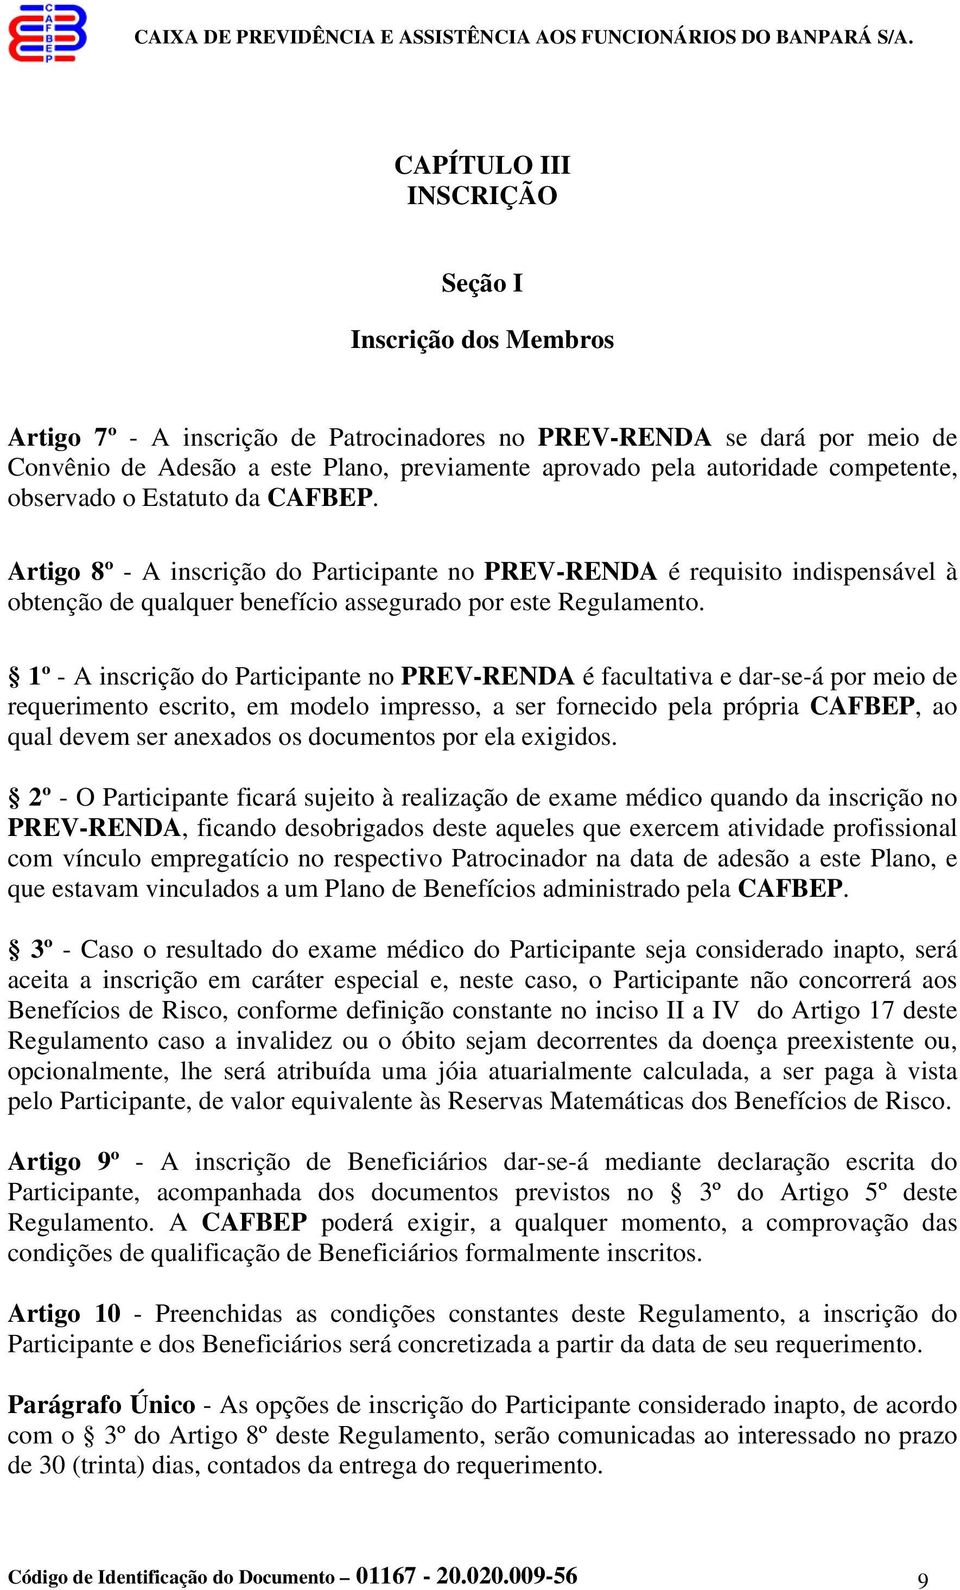 1º - A inscrição do Participante no PREV-RENDA é facultativa e dar-se-á por meio de requerimento escrito, em modelo impresso, a ser fornecido pela própria CAFBEP, ao qual devem ser anexados os